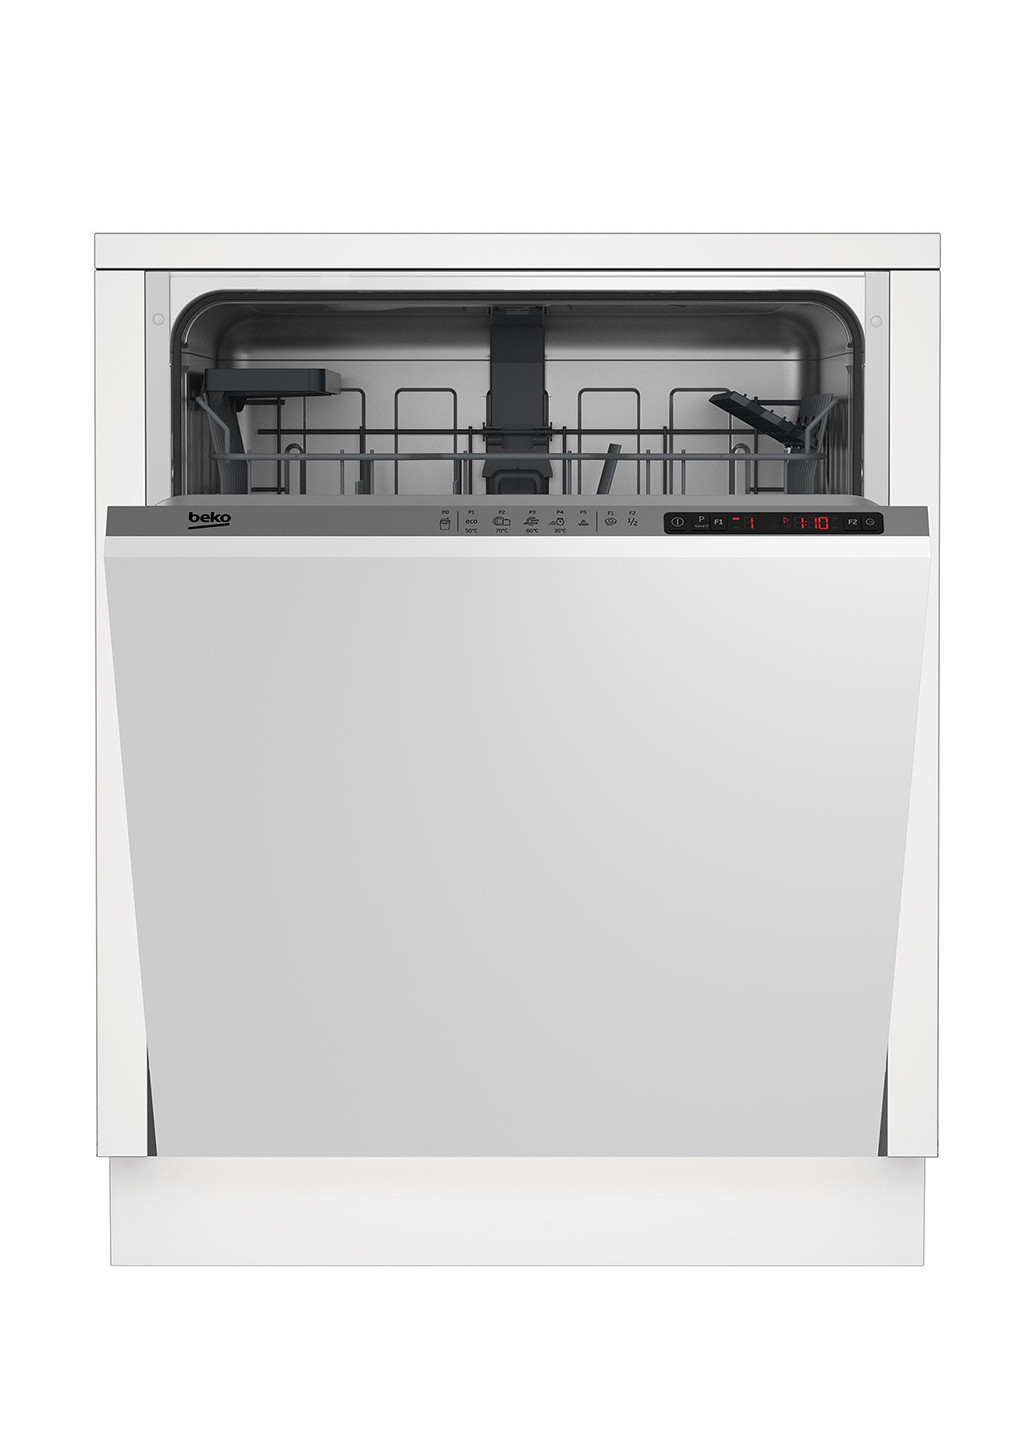 Встраиваемая посудомоечная машина полновстраиваемая BEKO DIN25410